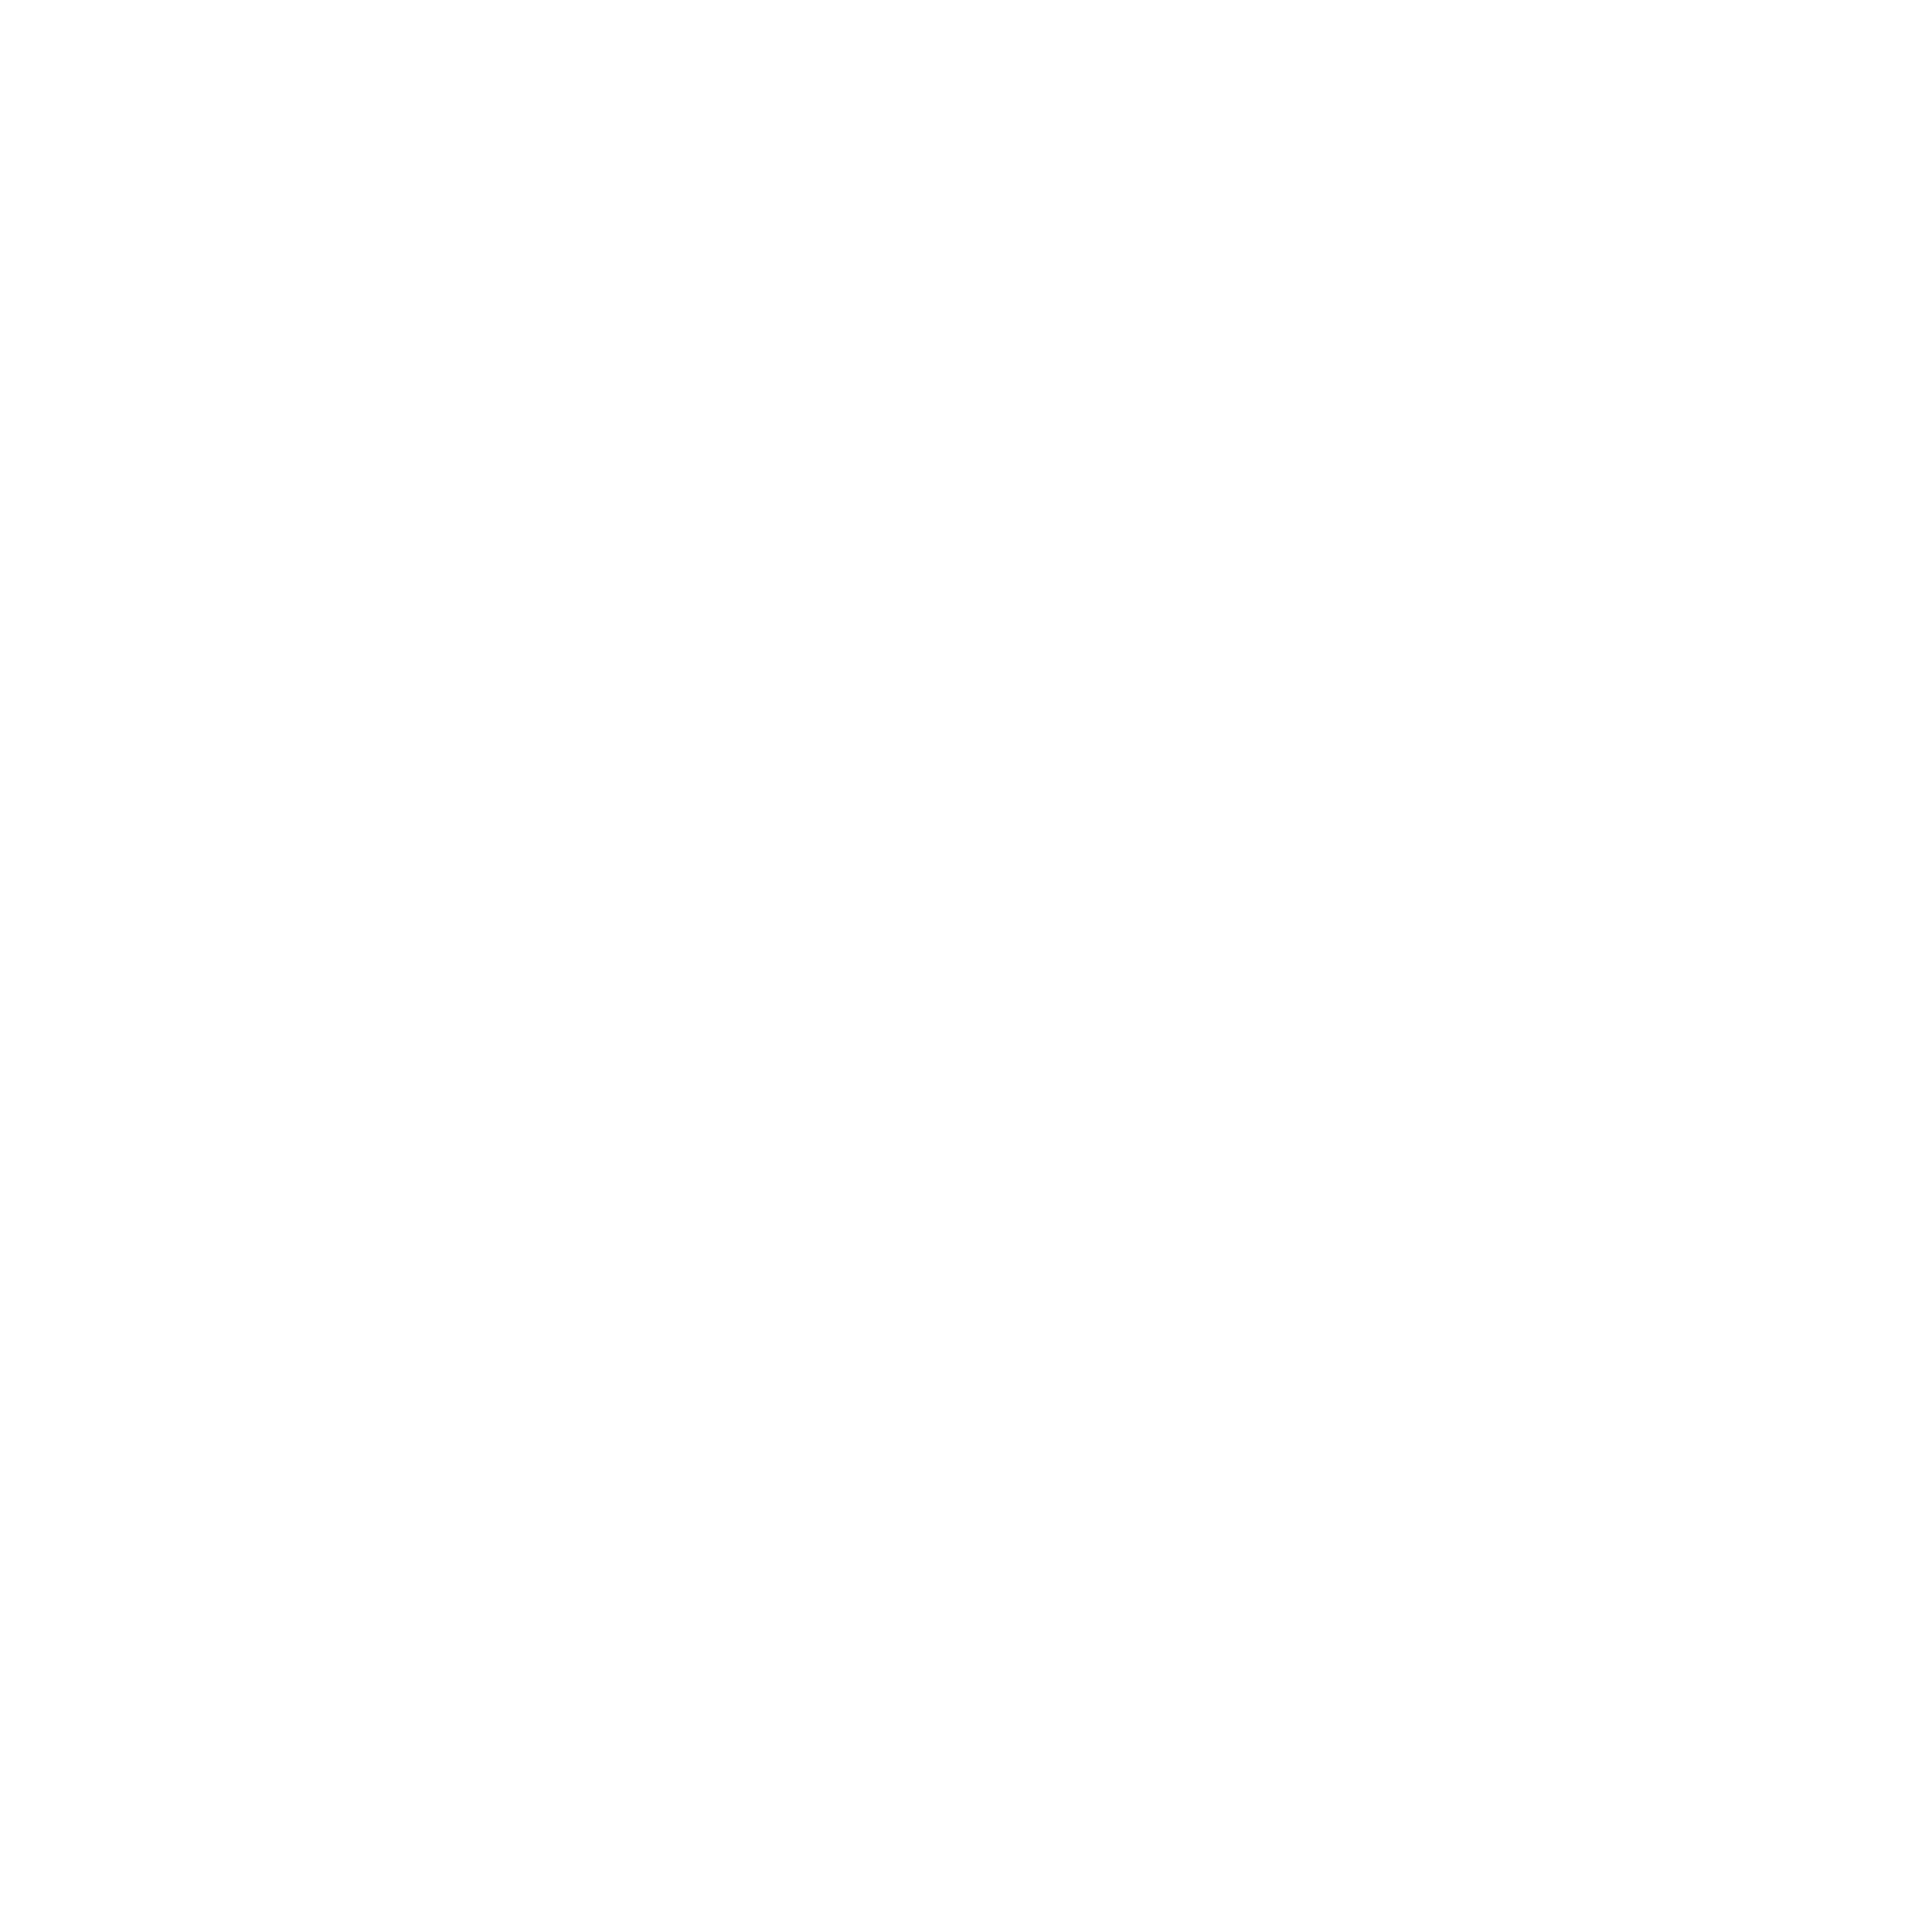 svn icon